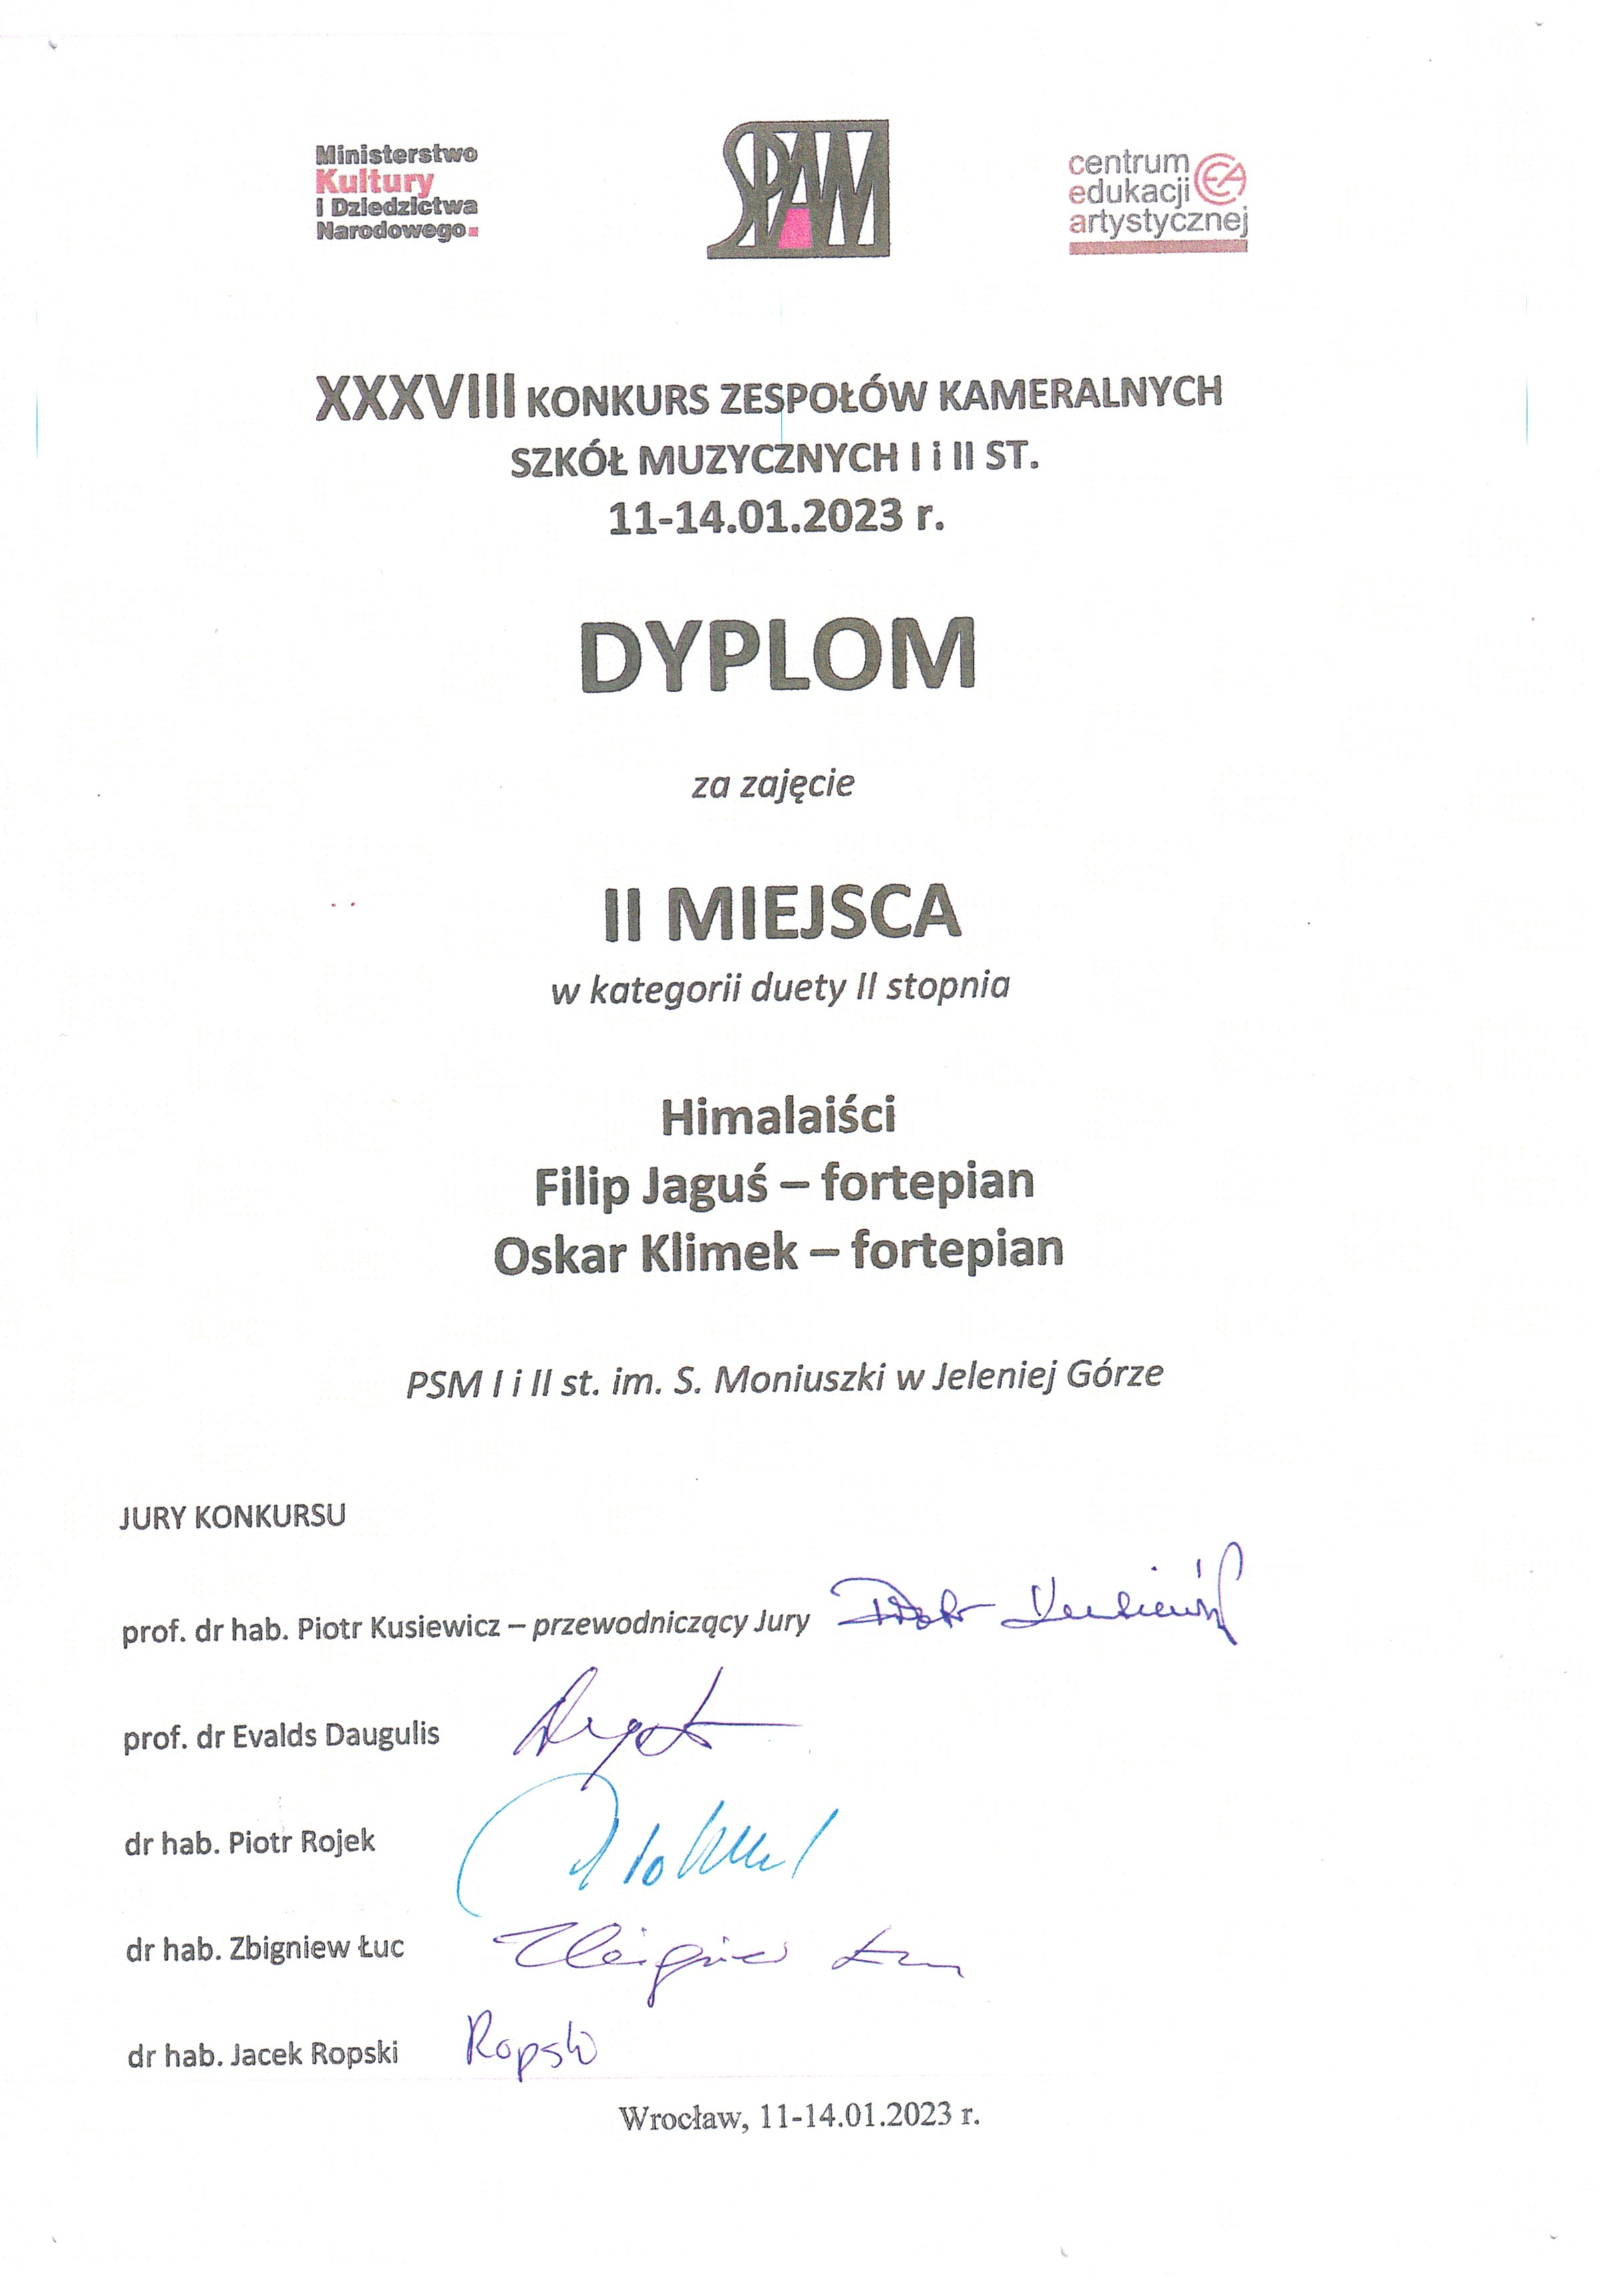 Dyplom za zajęcie II miejsca w kategorii duety II stopnia Himalaiści Filip Jaguś - fortepian, Oskar Klimek - fortepian